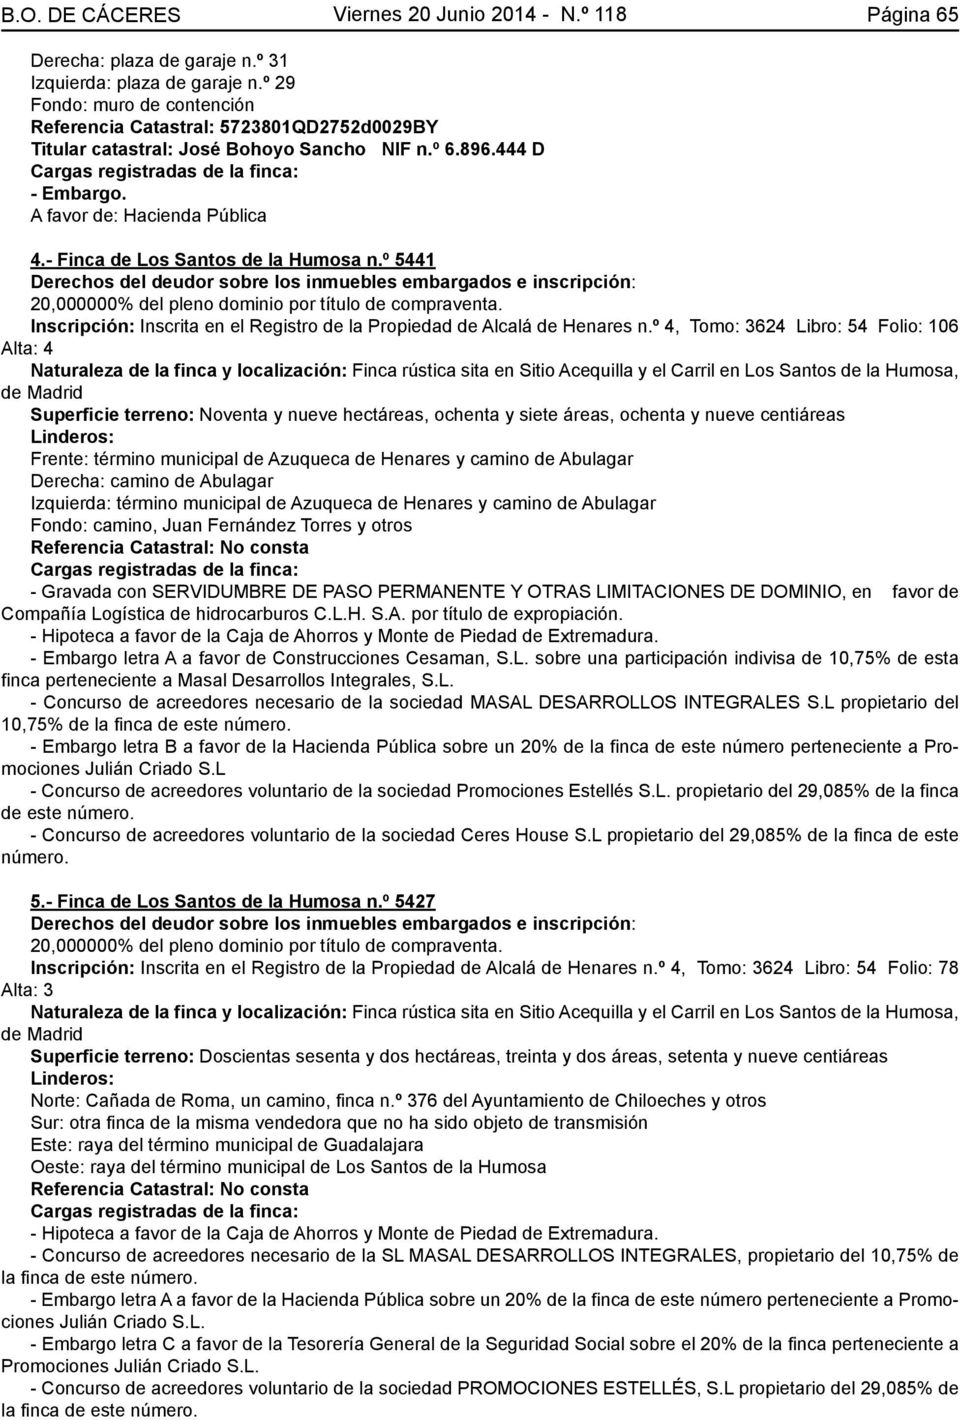 - Finca de Los Santos de la Humosa n.º 5441 Inscripción: Inscrita en el Registro de la Propiedad de Alcalá de Henares n.